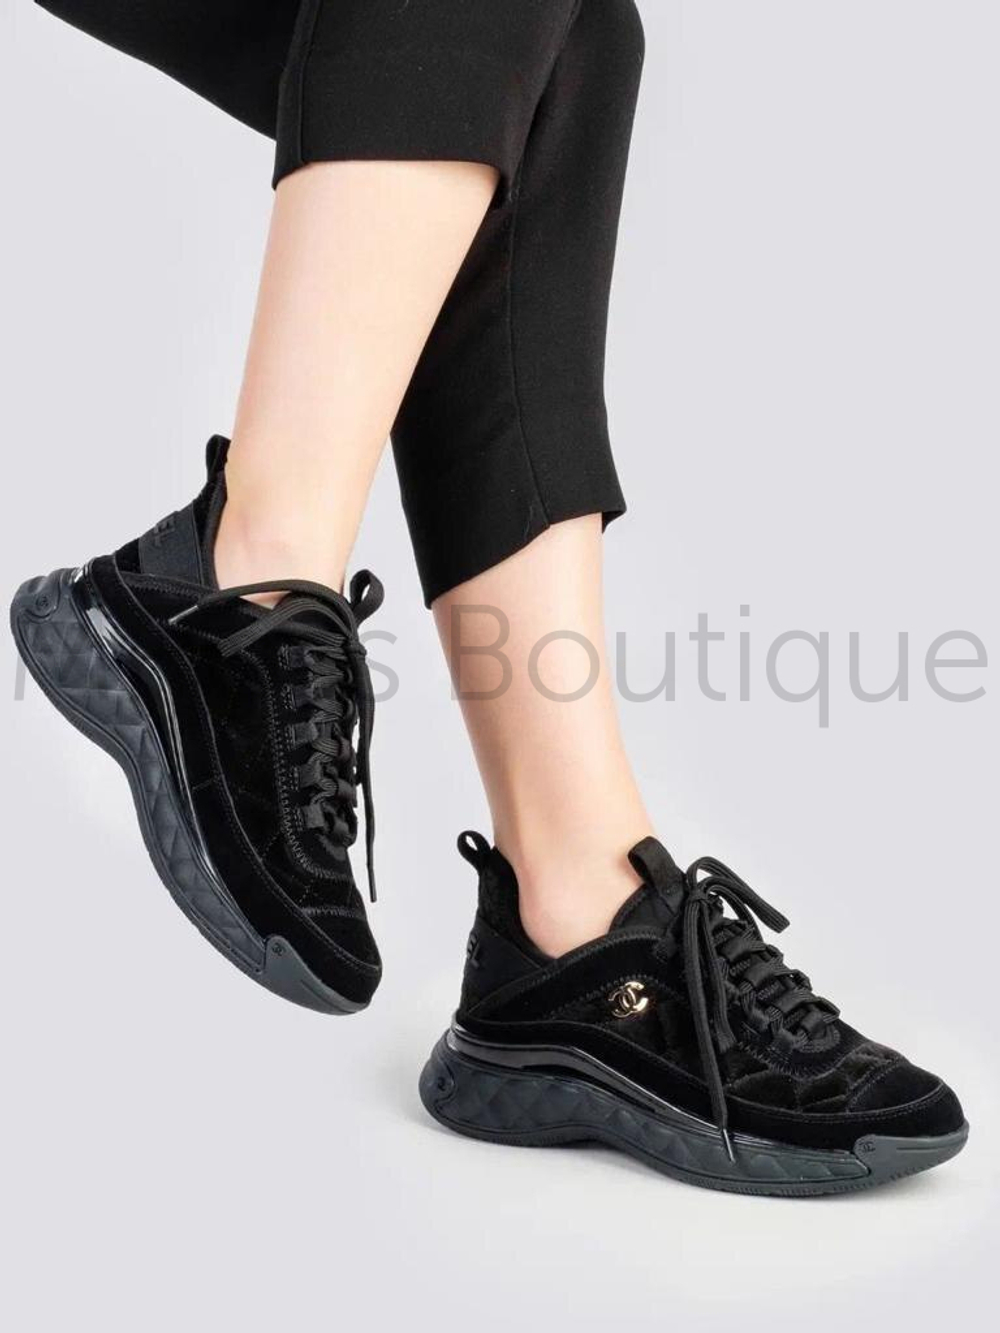 Черные кроссовки Chanel Шанель люкс класса